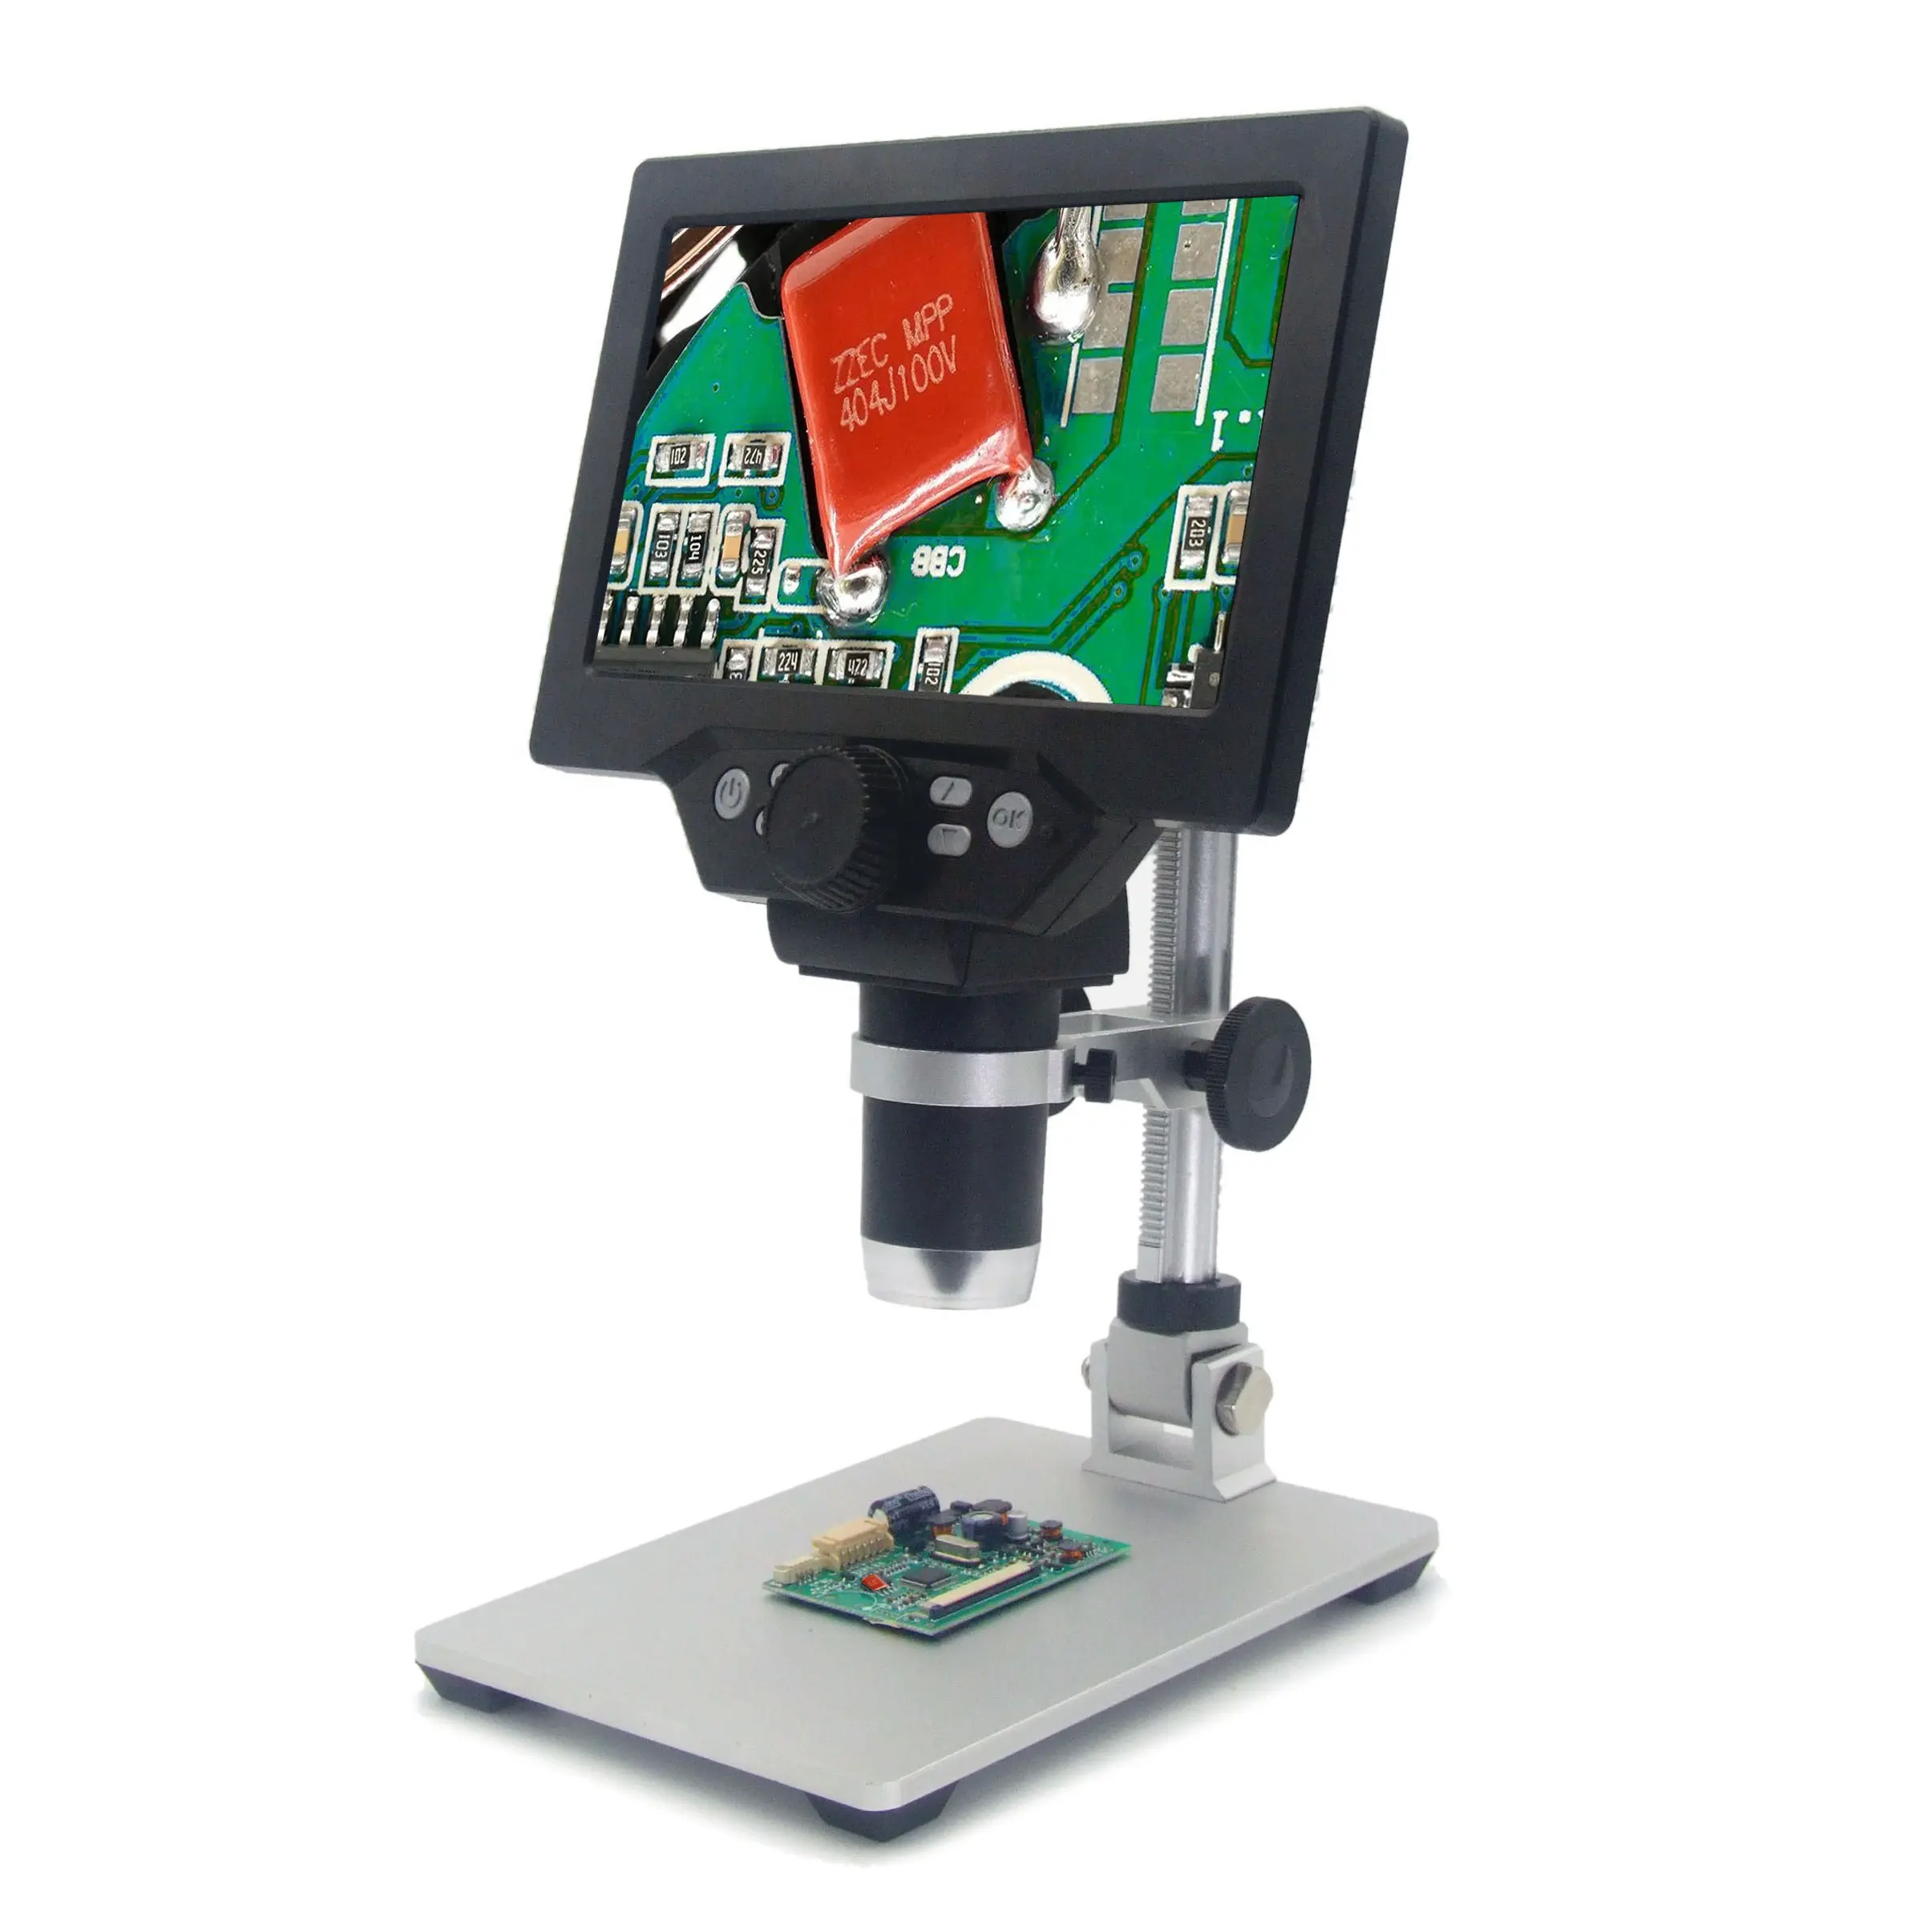 G1200 HD 2MP 1200x mikroskop 7 ''LCD lehimleme kaynak dijital mikroskop